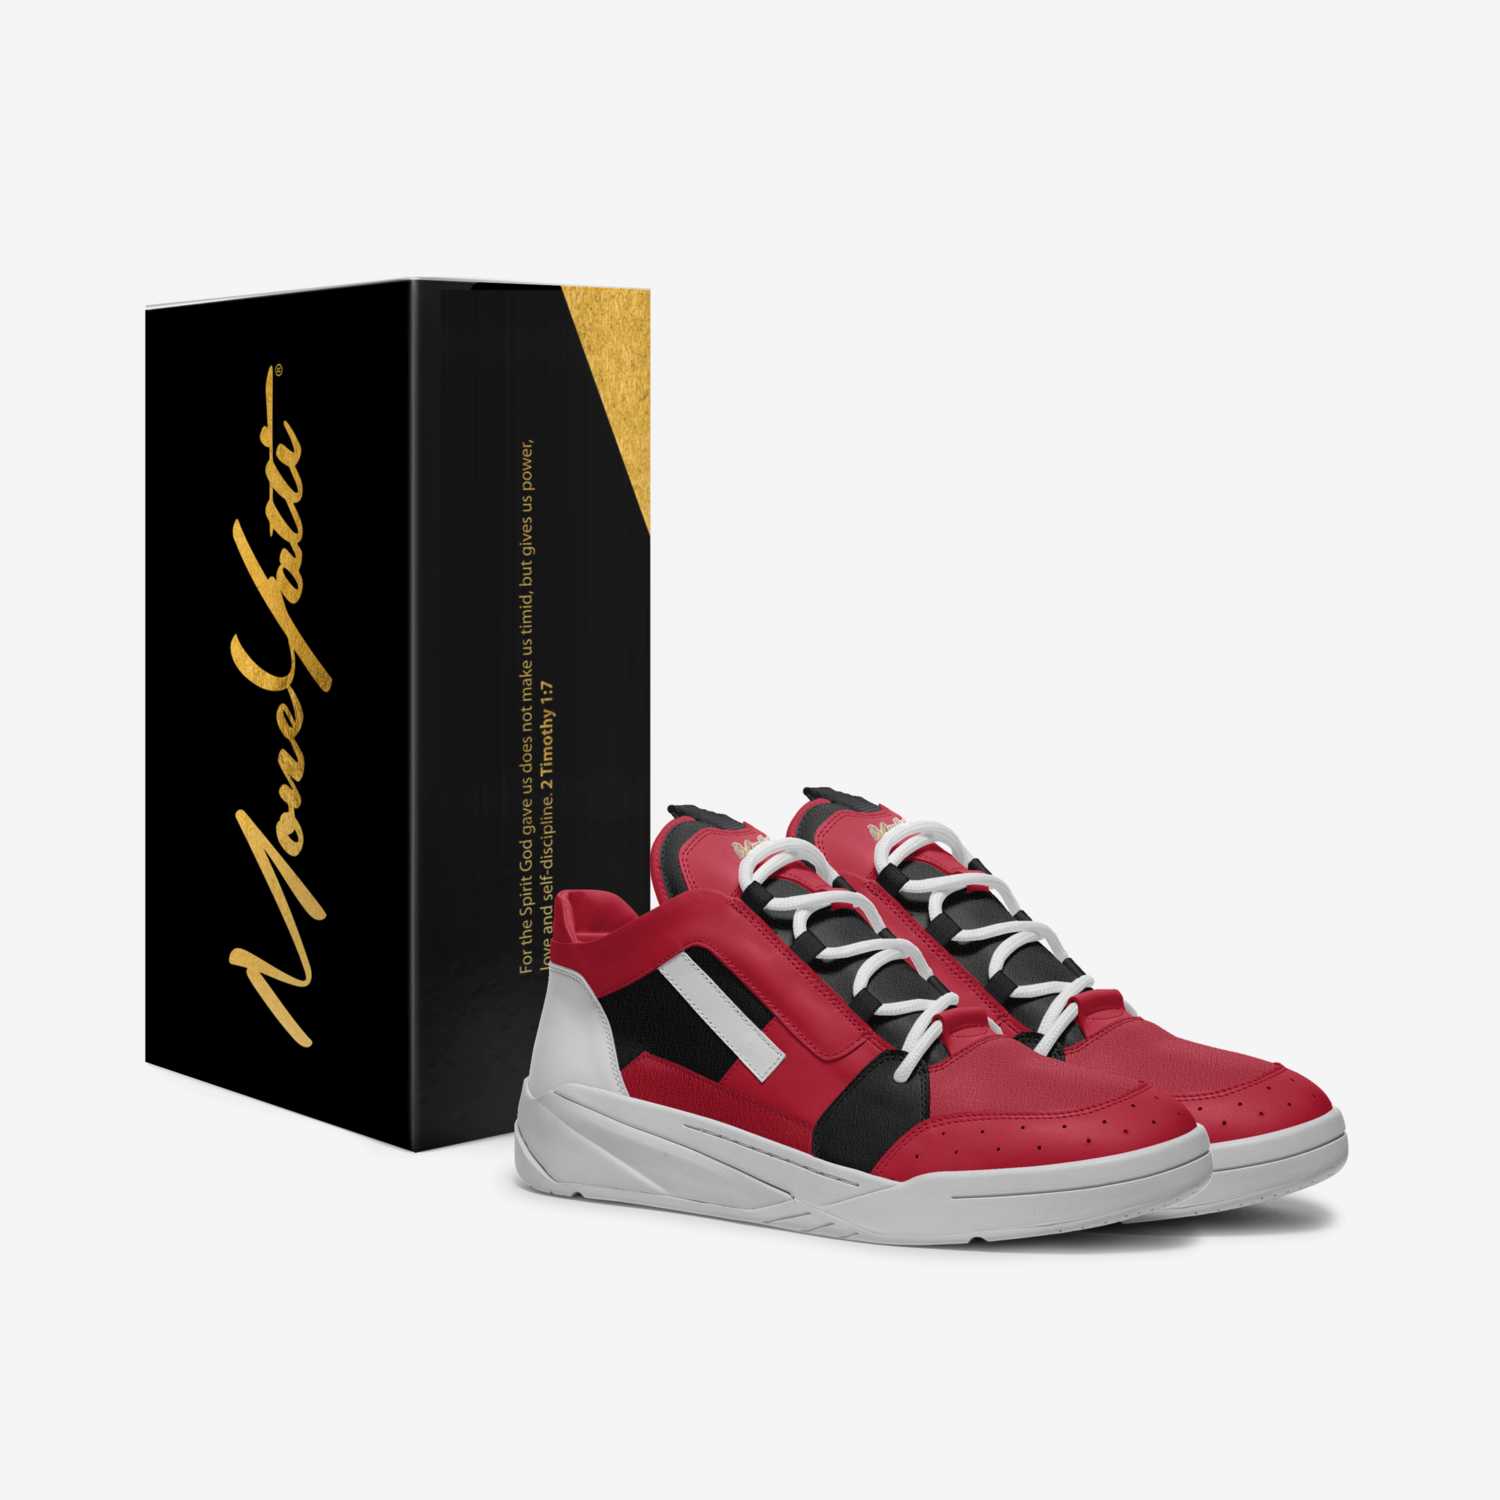 MONEYATTI TURBO 007 custom made in Italy shoes by Moneyatti Brand | Box view